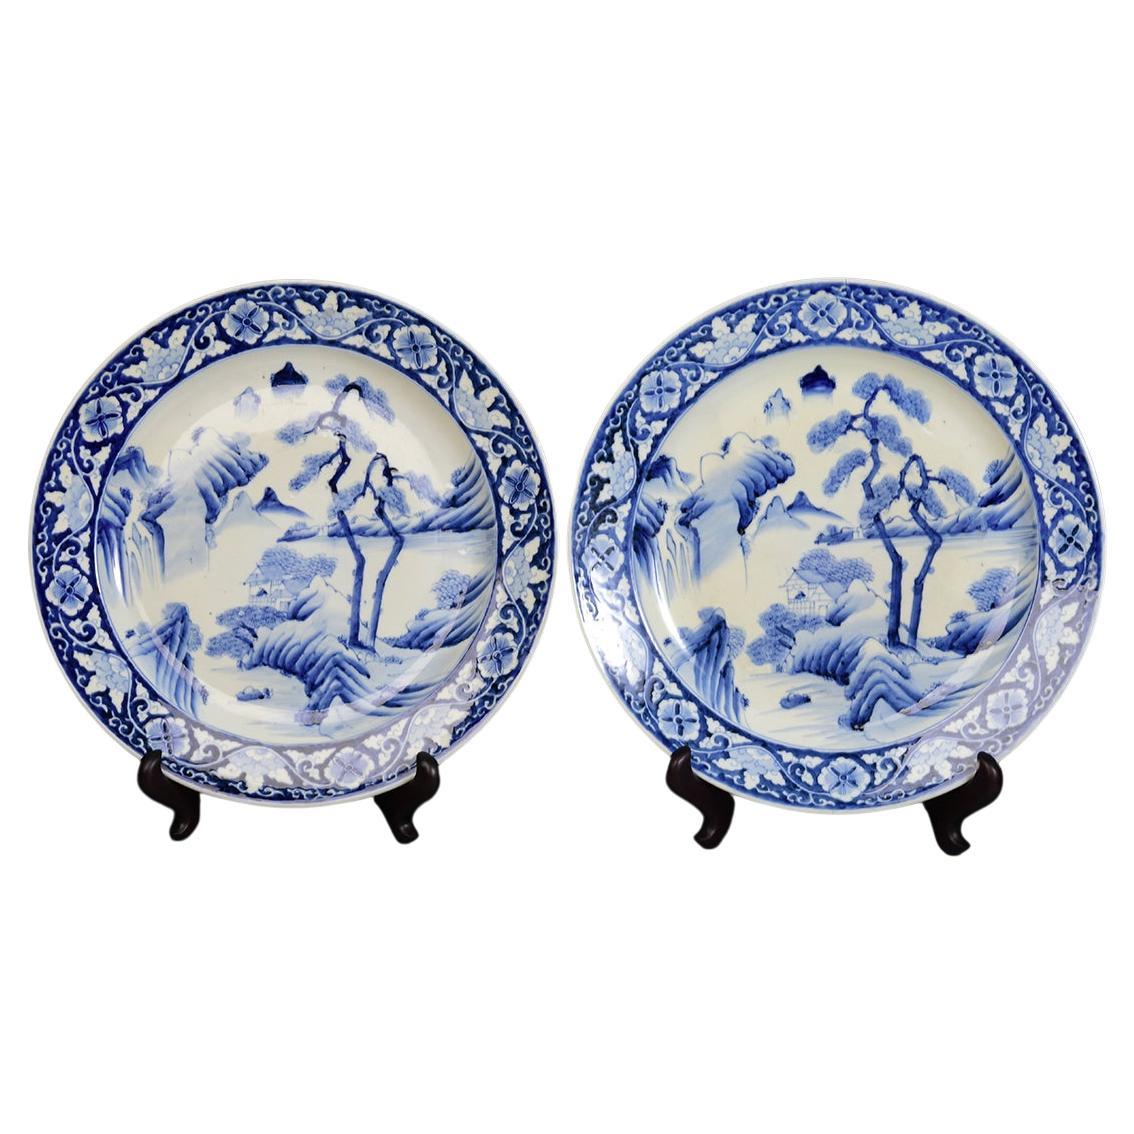 Paire de plats de présentation anciens Meiji en porcelaine japonaise bleue et blanche du 19ème siècle